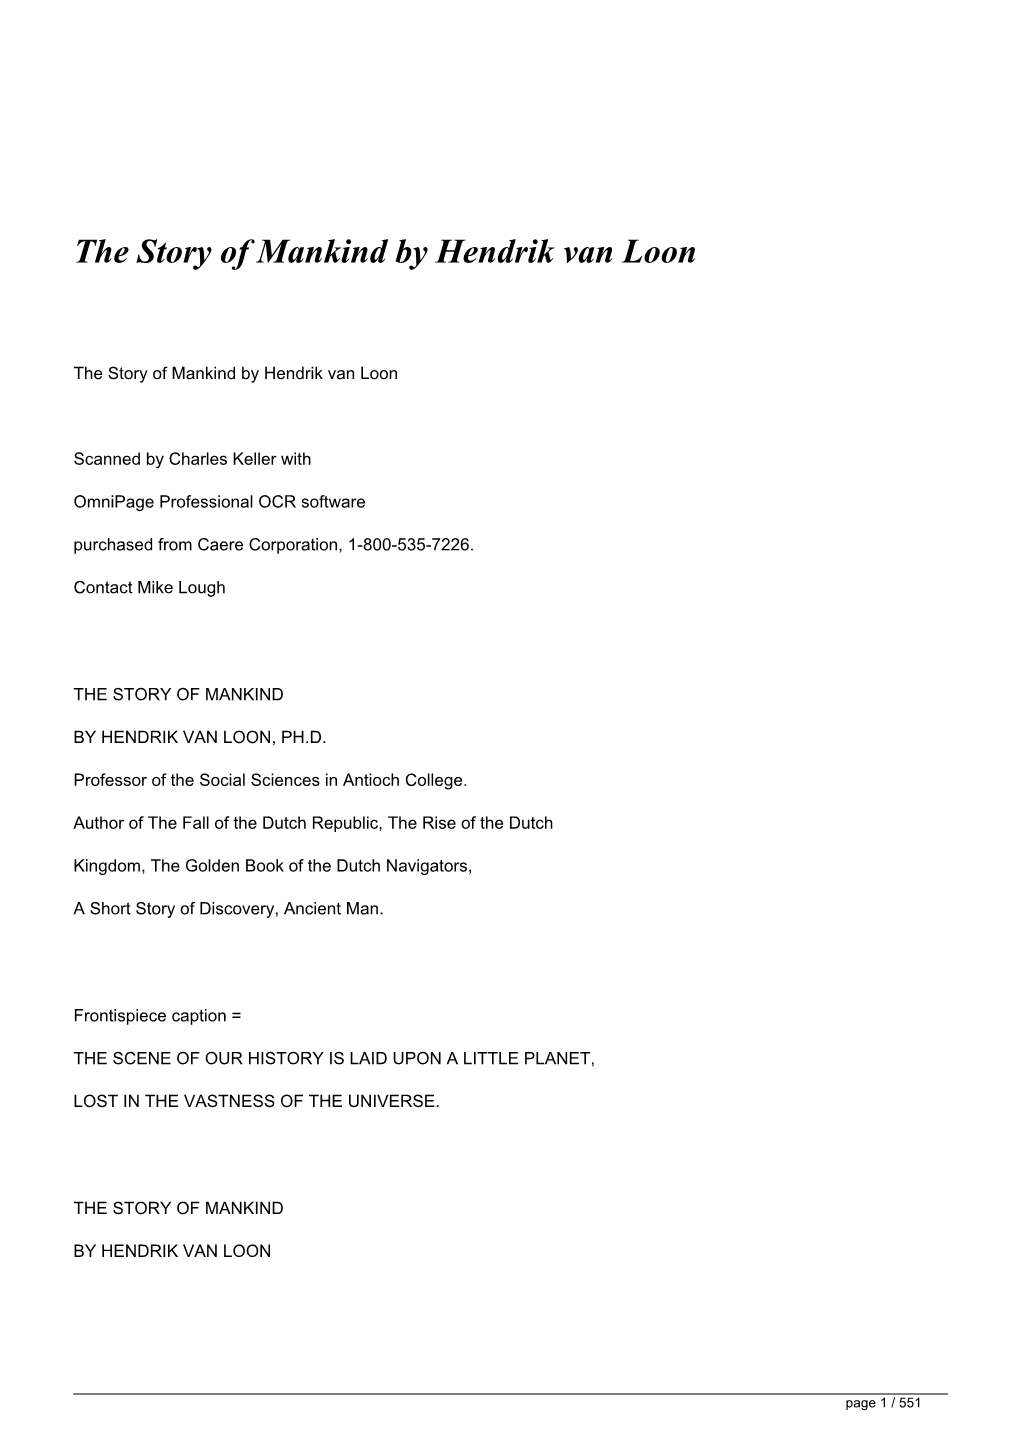 The Story of Mankind by Hendrik Van Loon&lt;/H1&gt;